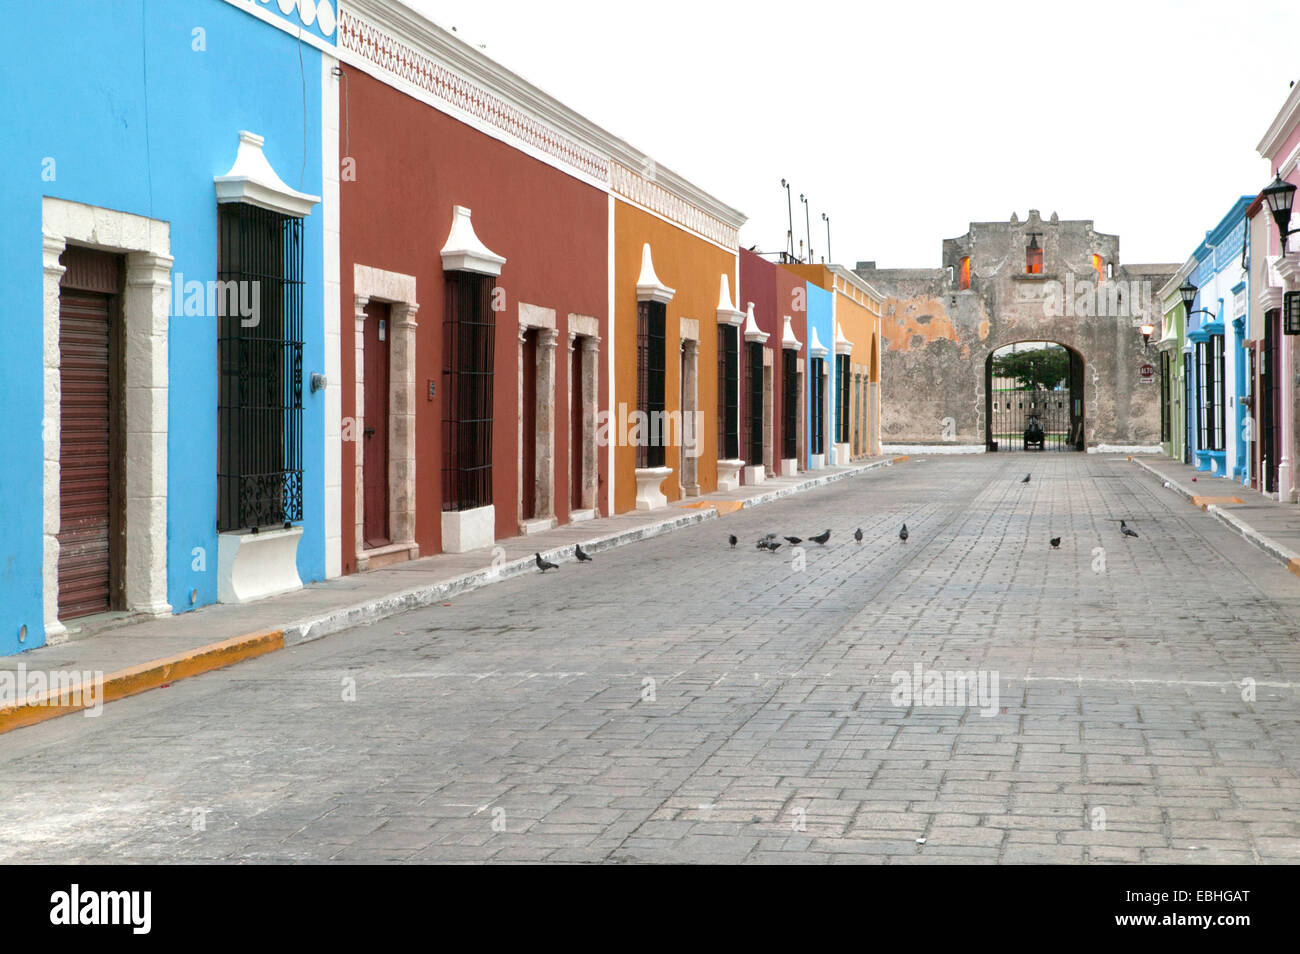 Maisons coloniales espagnoles et historique Land Gate vu depuis la 59e Rue, Campeche, Mexique Banque D'Images